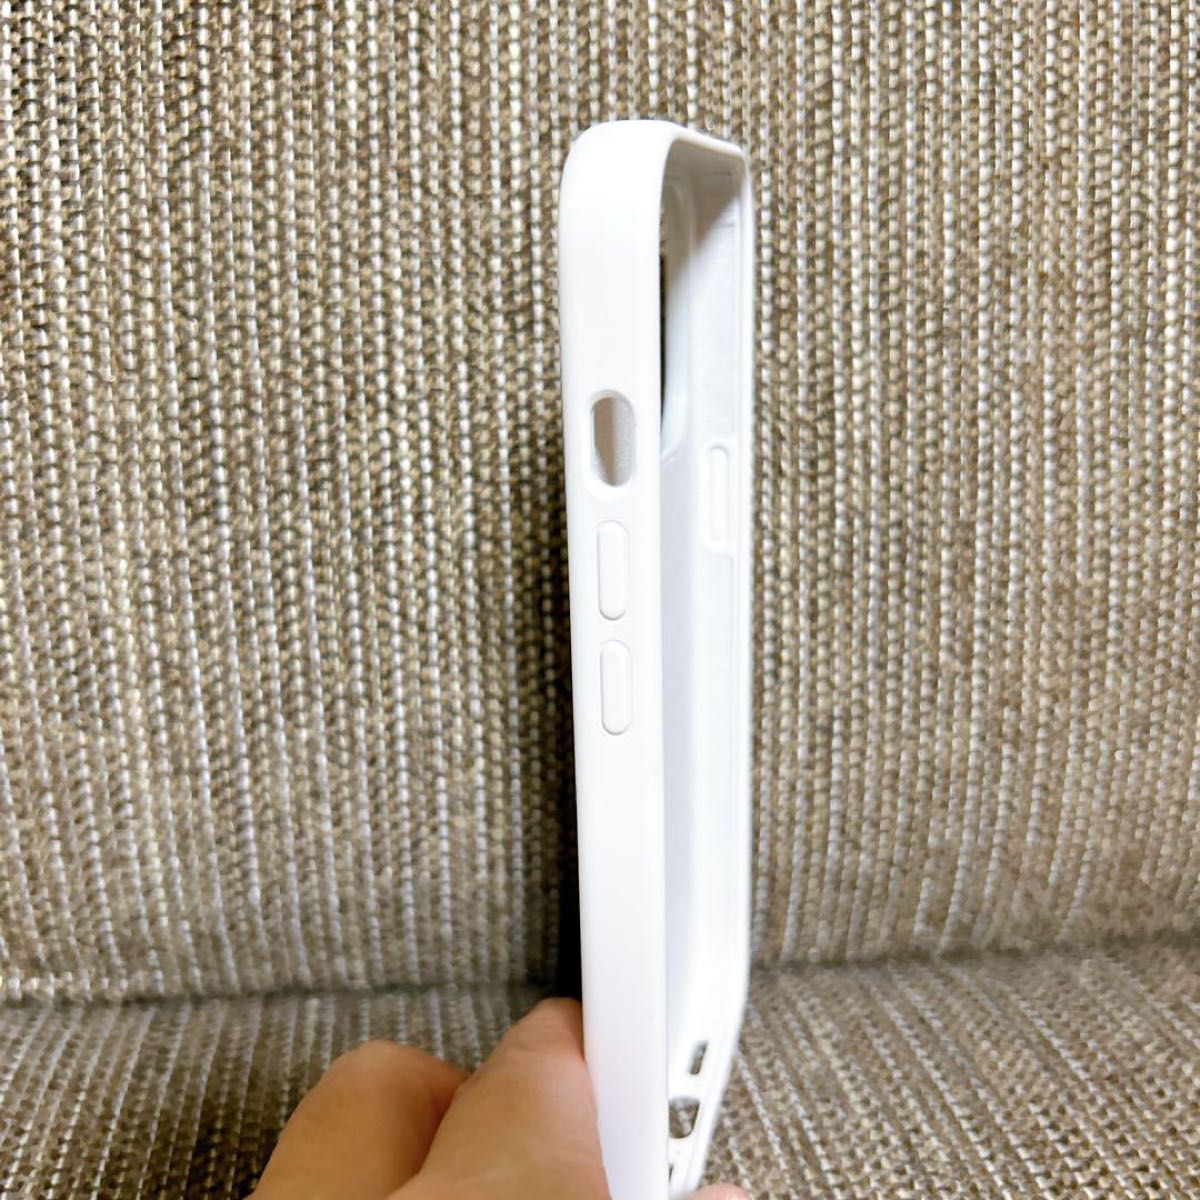 【マット感】Spigen iPhone13Proケース シリコン 衝撃吸収